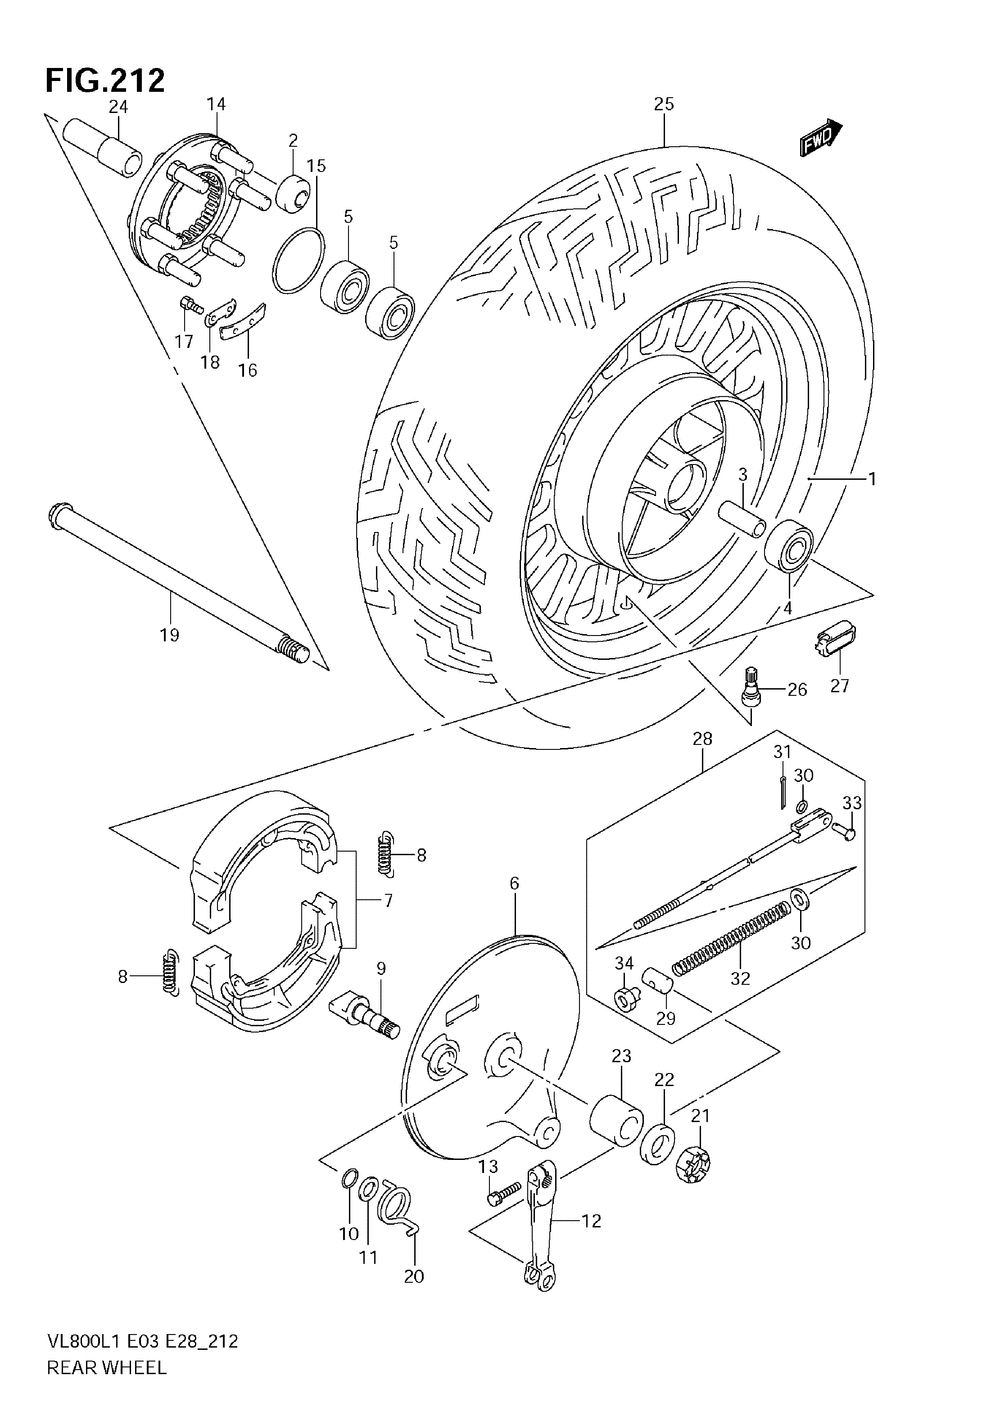 Rear wheel (vl800cl1 e33)